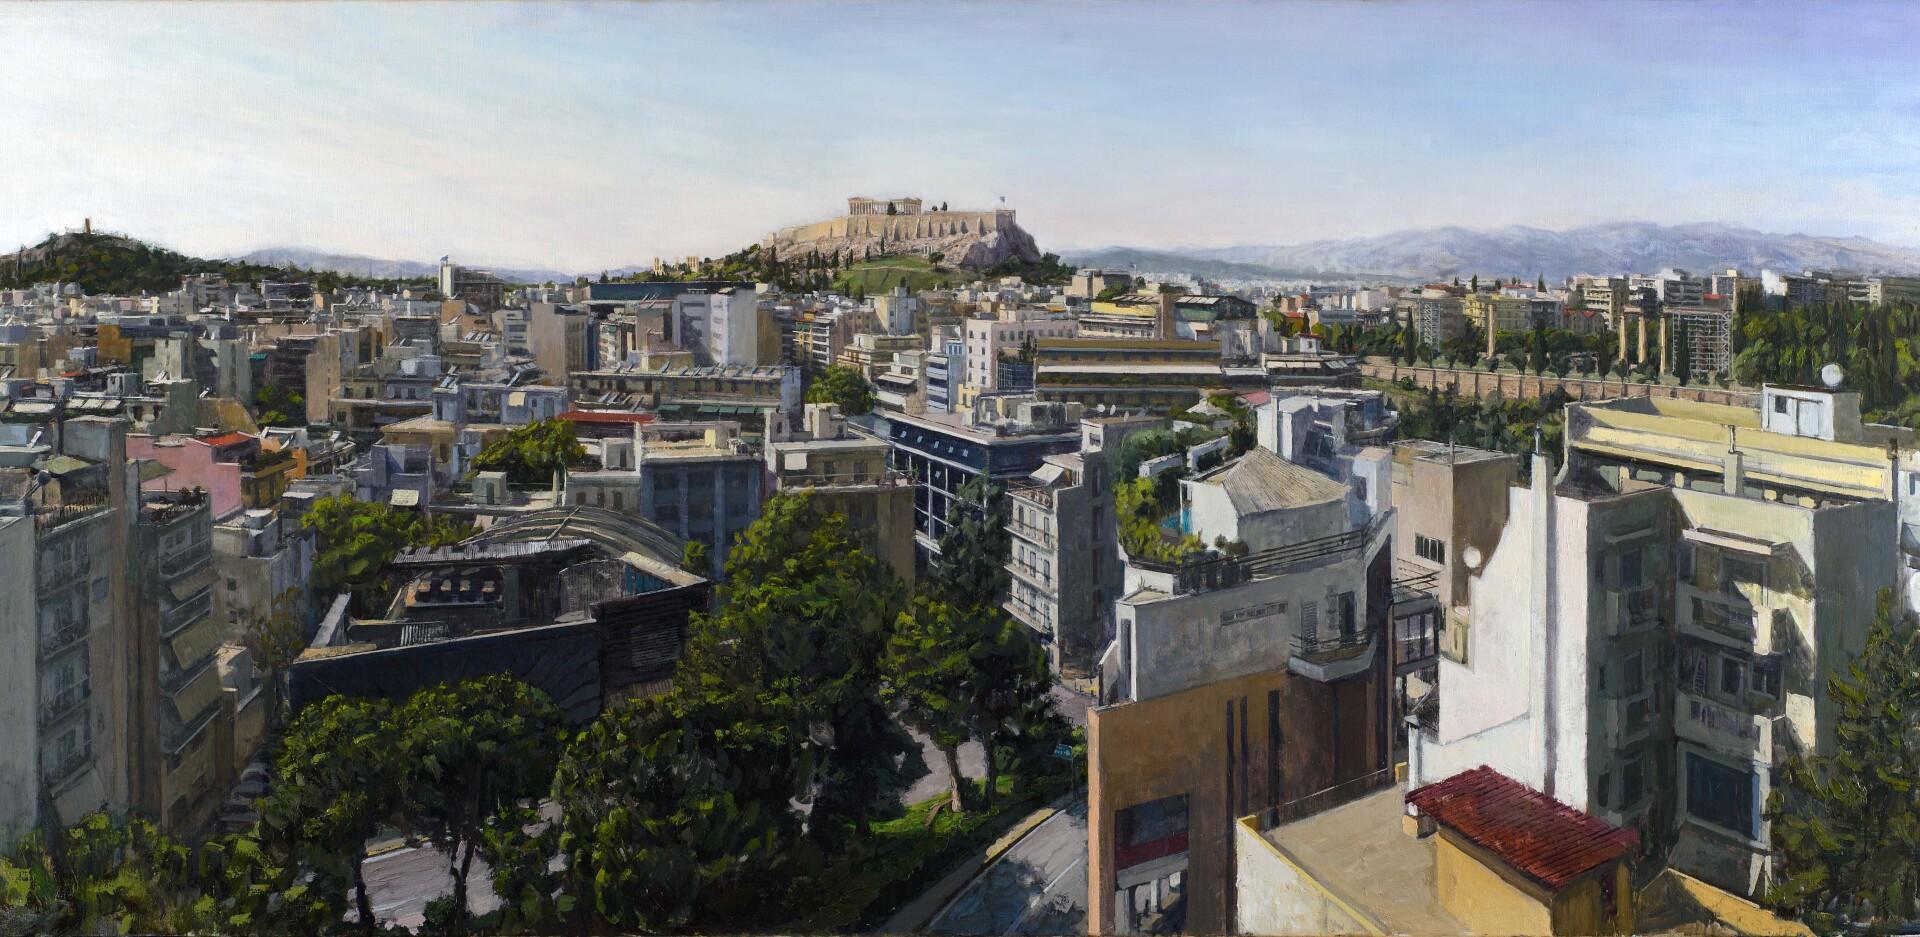 Αντώνης Σκαμπαβιρίας - «Πέρα από το μπετόν» στη Γκαλερί Σκουφά: Το έργο του  «Η θέα της Βίλης», 230x105